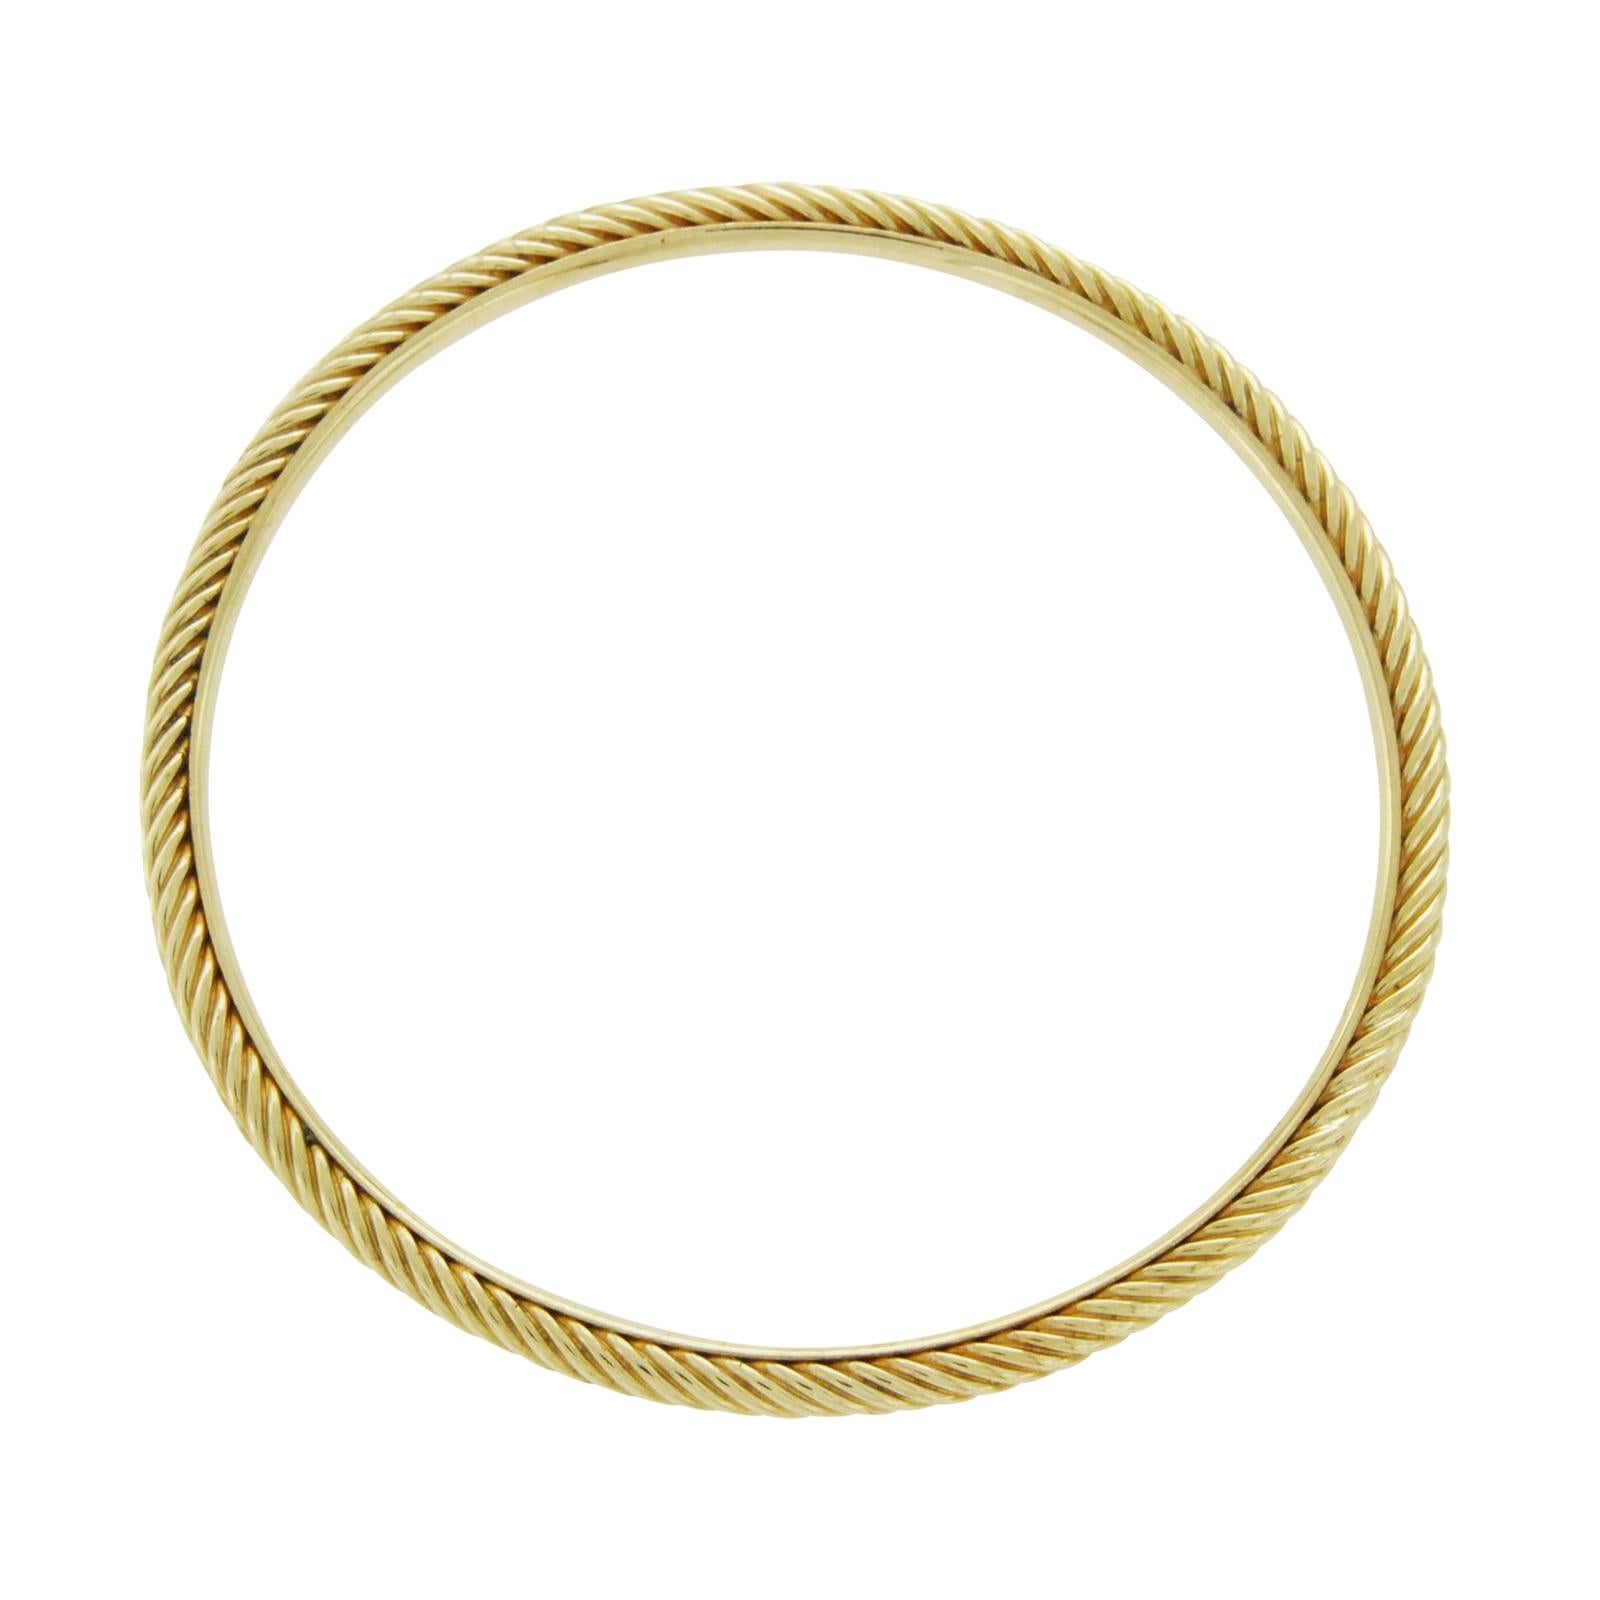 Type: Bracelet
Wearable Length: 6.5